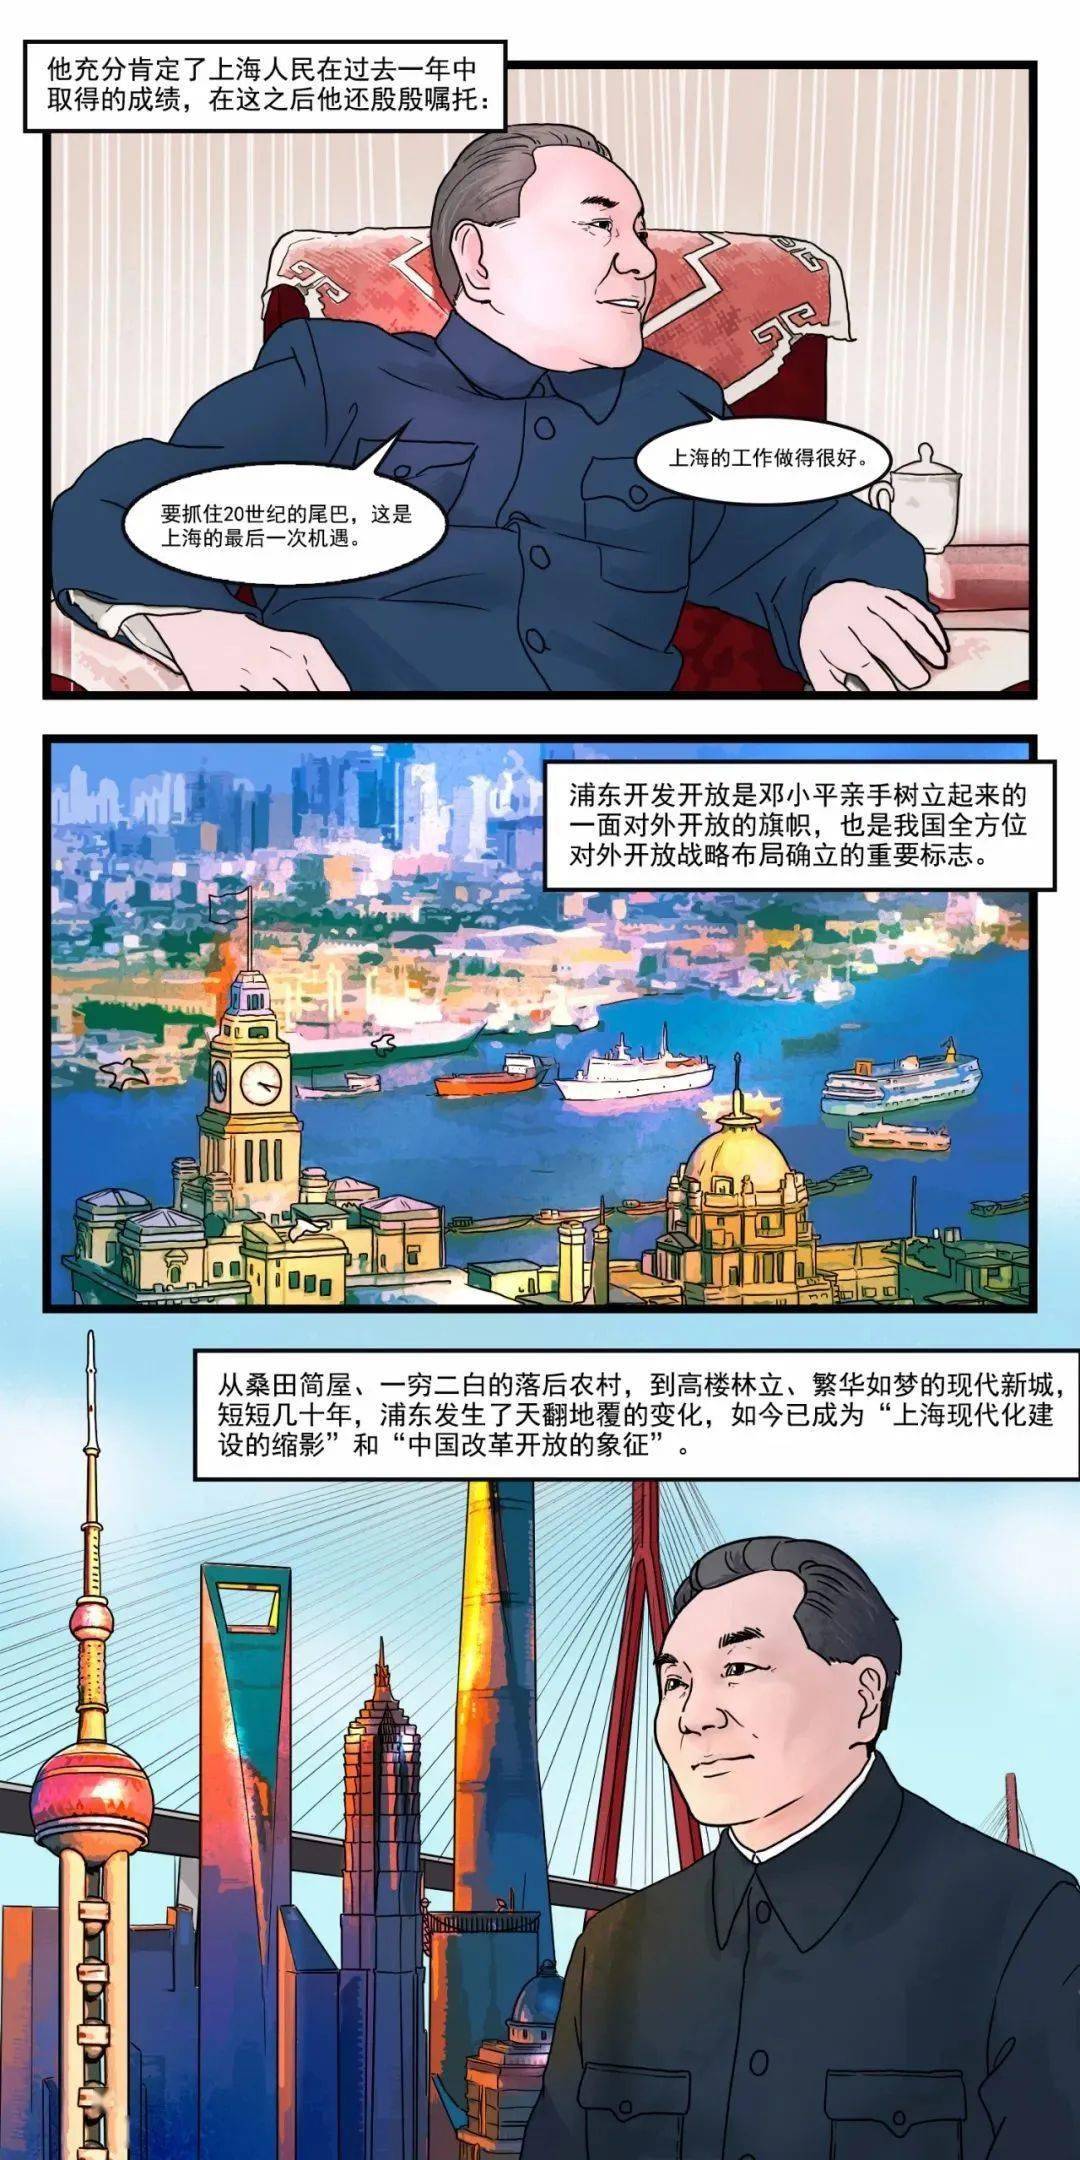 如今的浦东已成为"上海现代化建设的缩影"和"中国改革开放的象征"